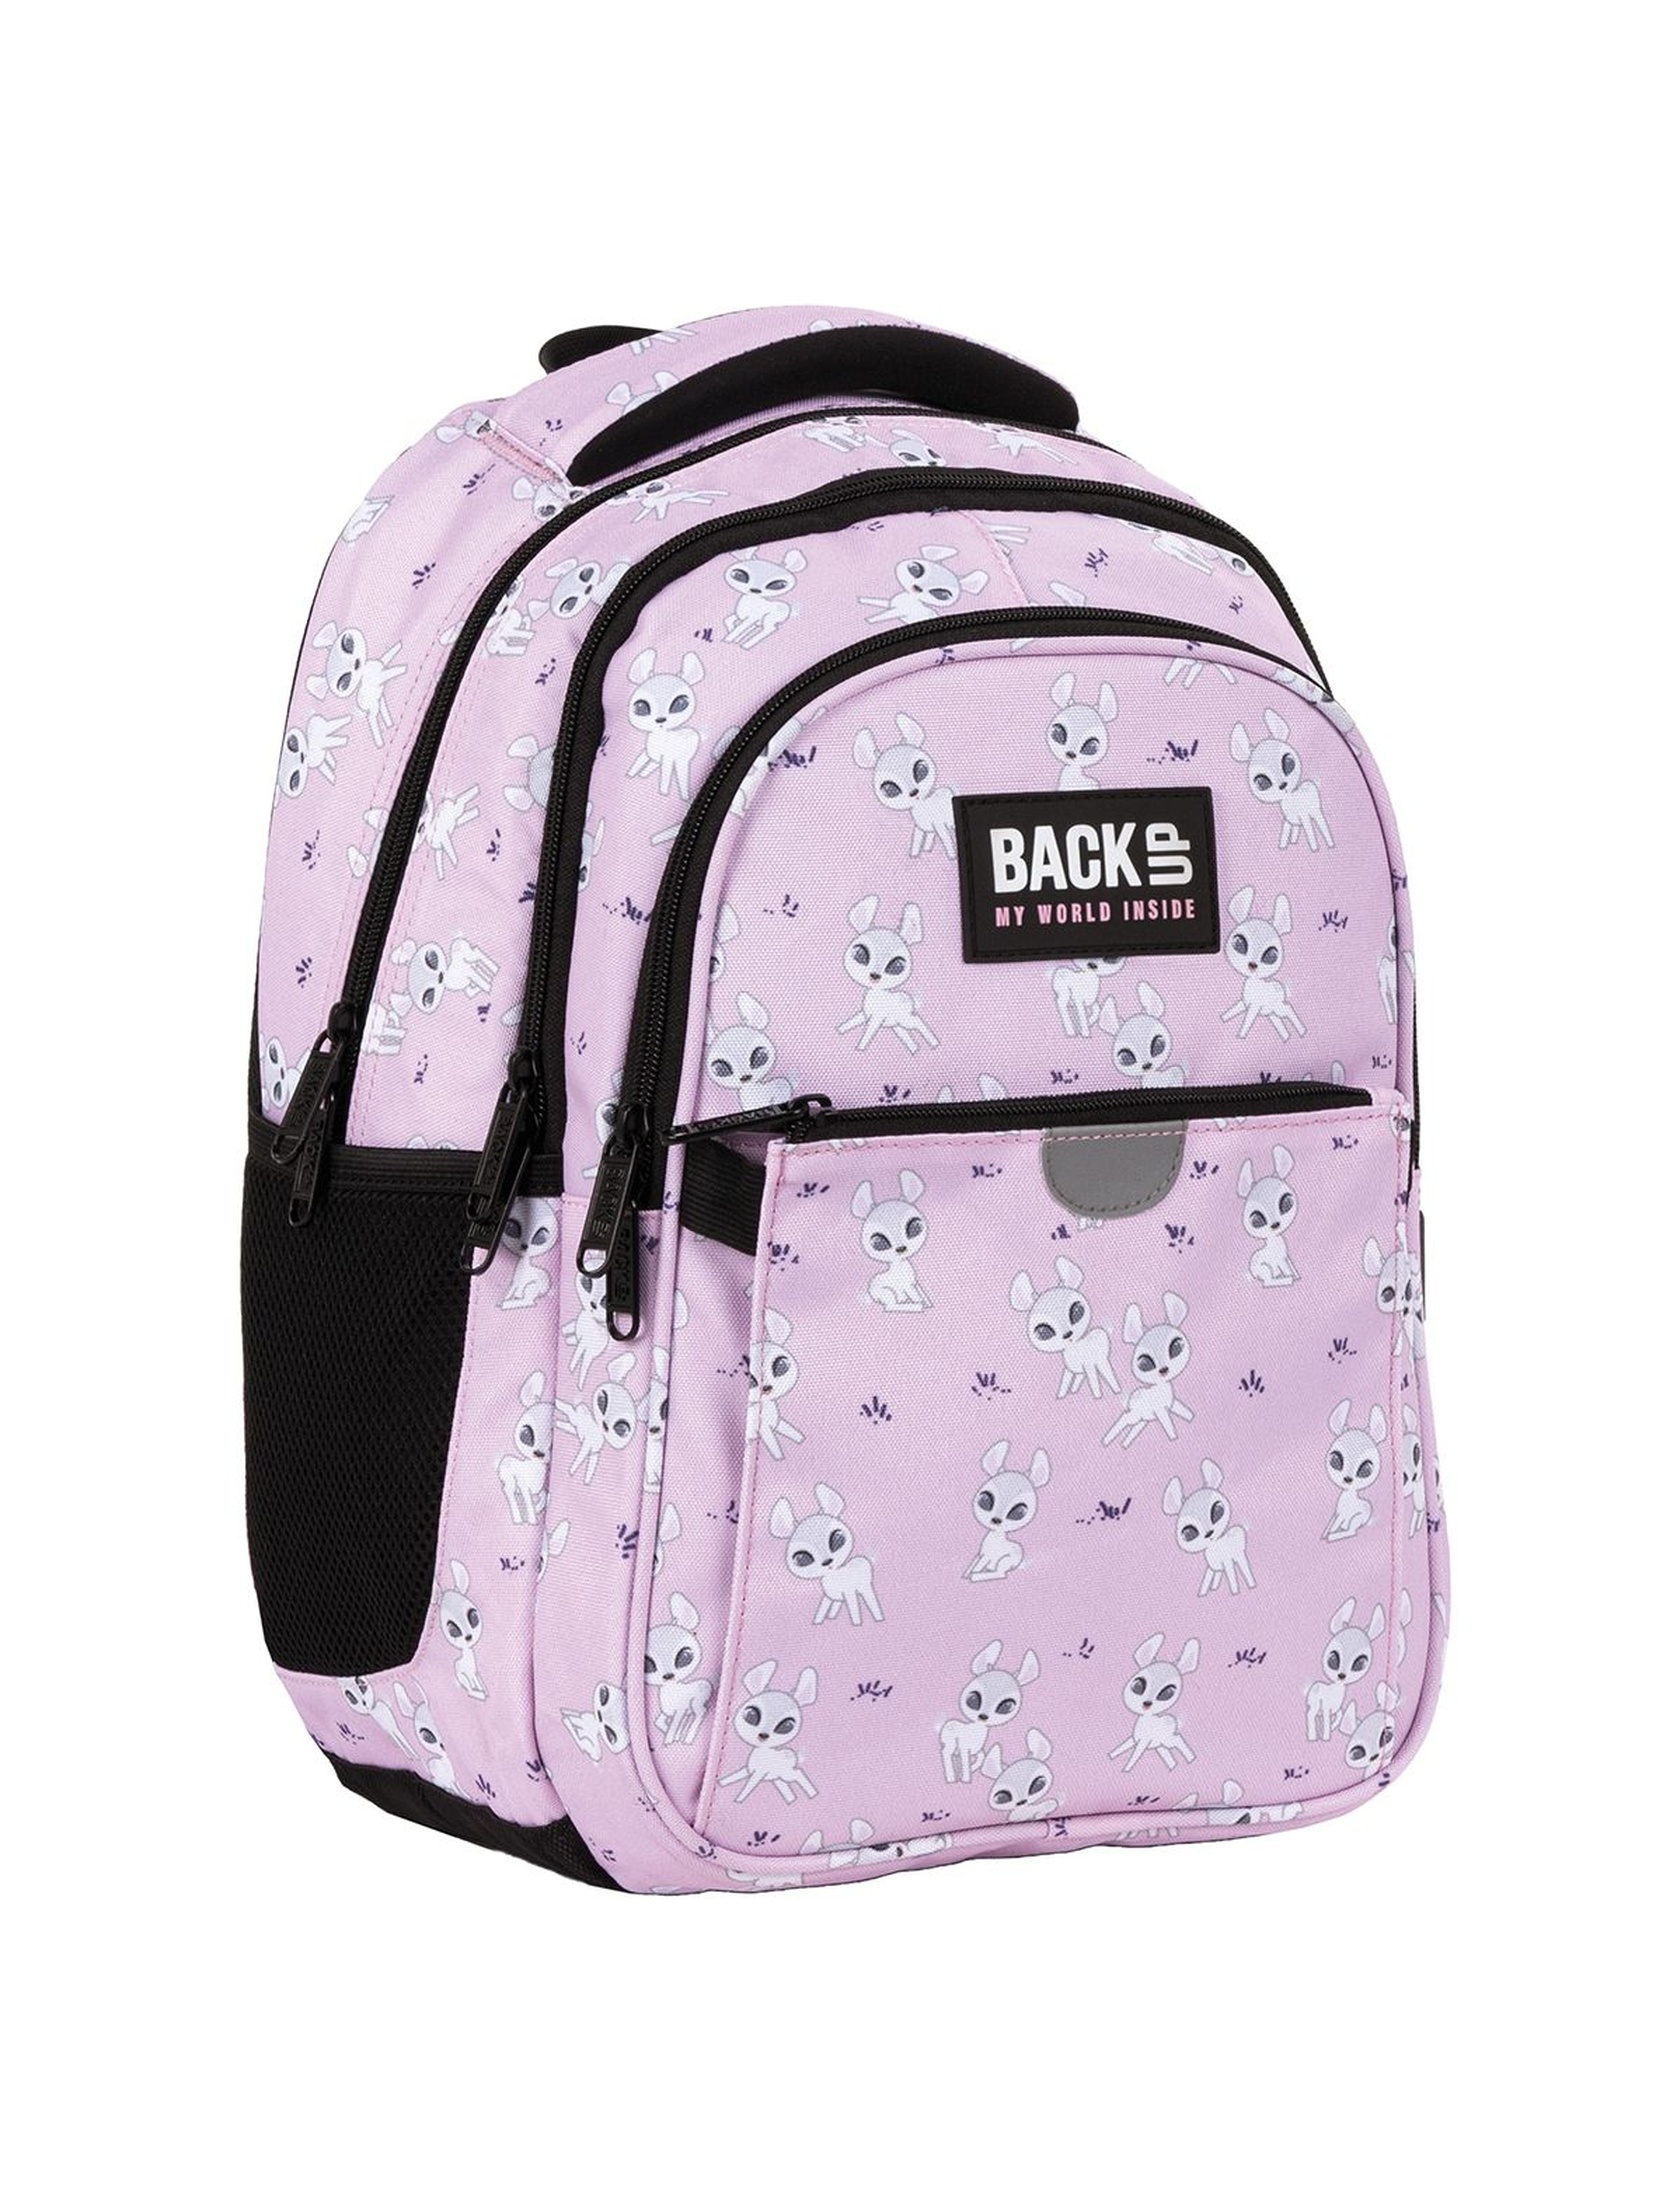 Plecak BackUp dziewczęcy z sarenkami różowy